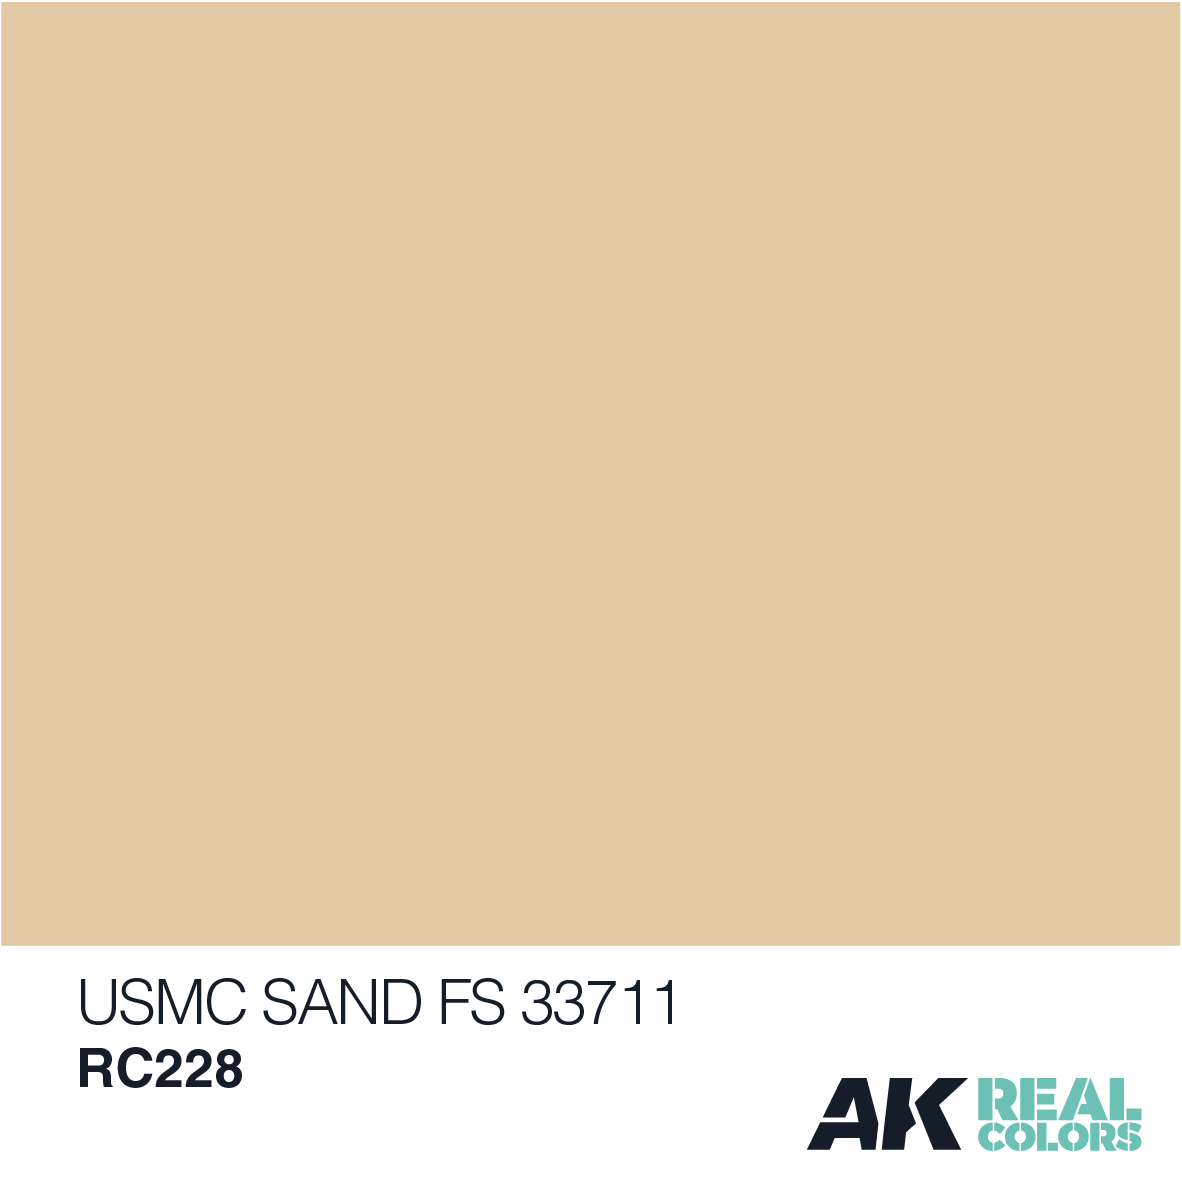 USMC Sand FS 33711